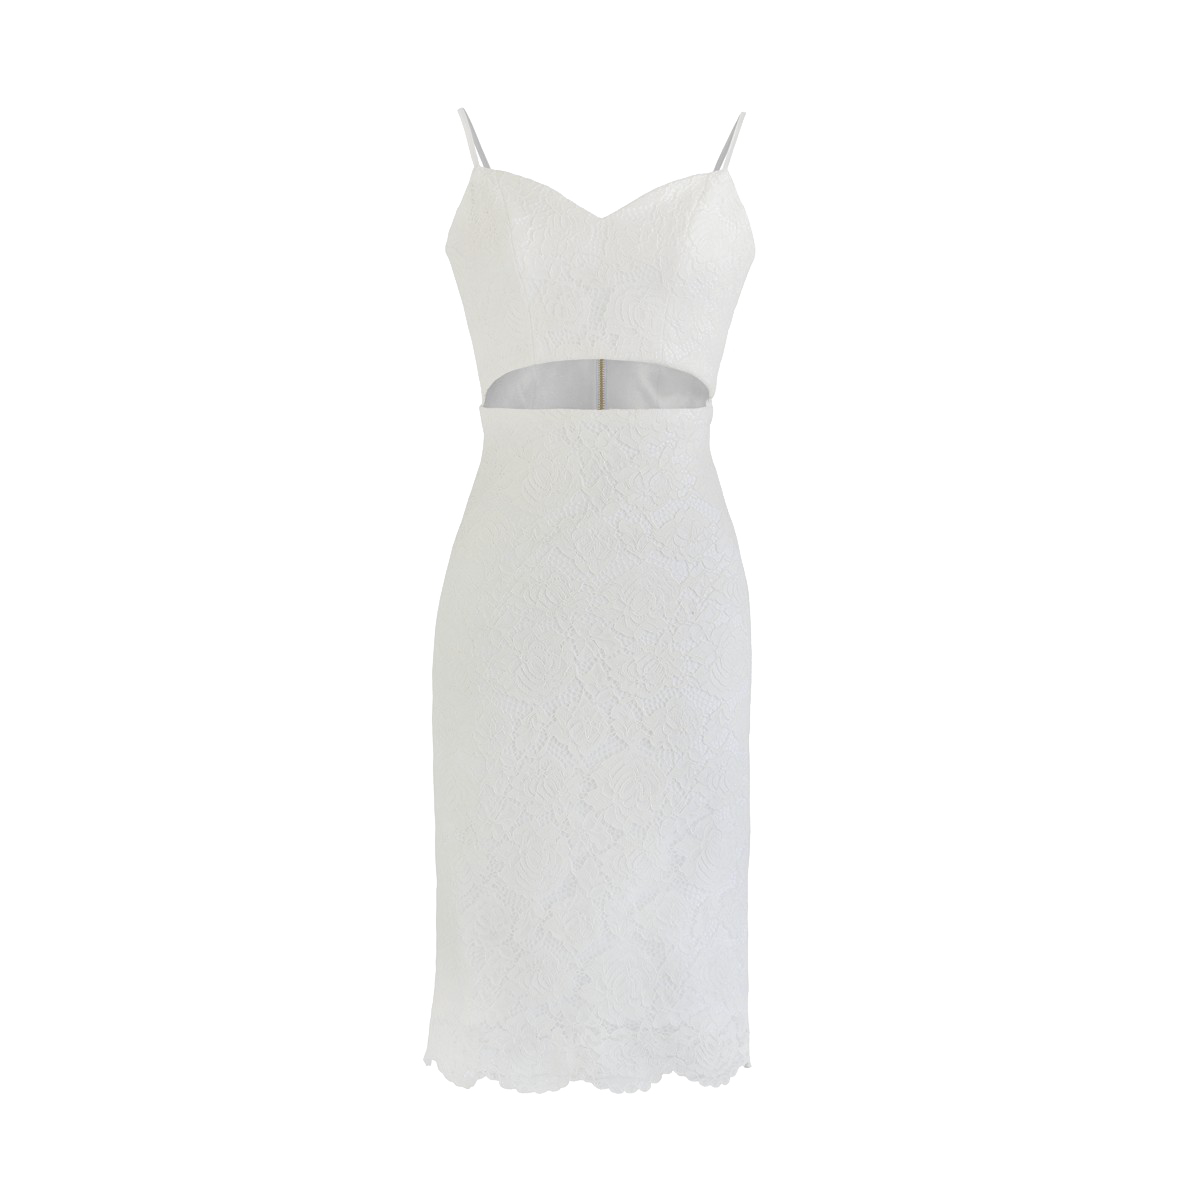 Weißes Kleid Transparentes Bild